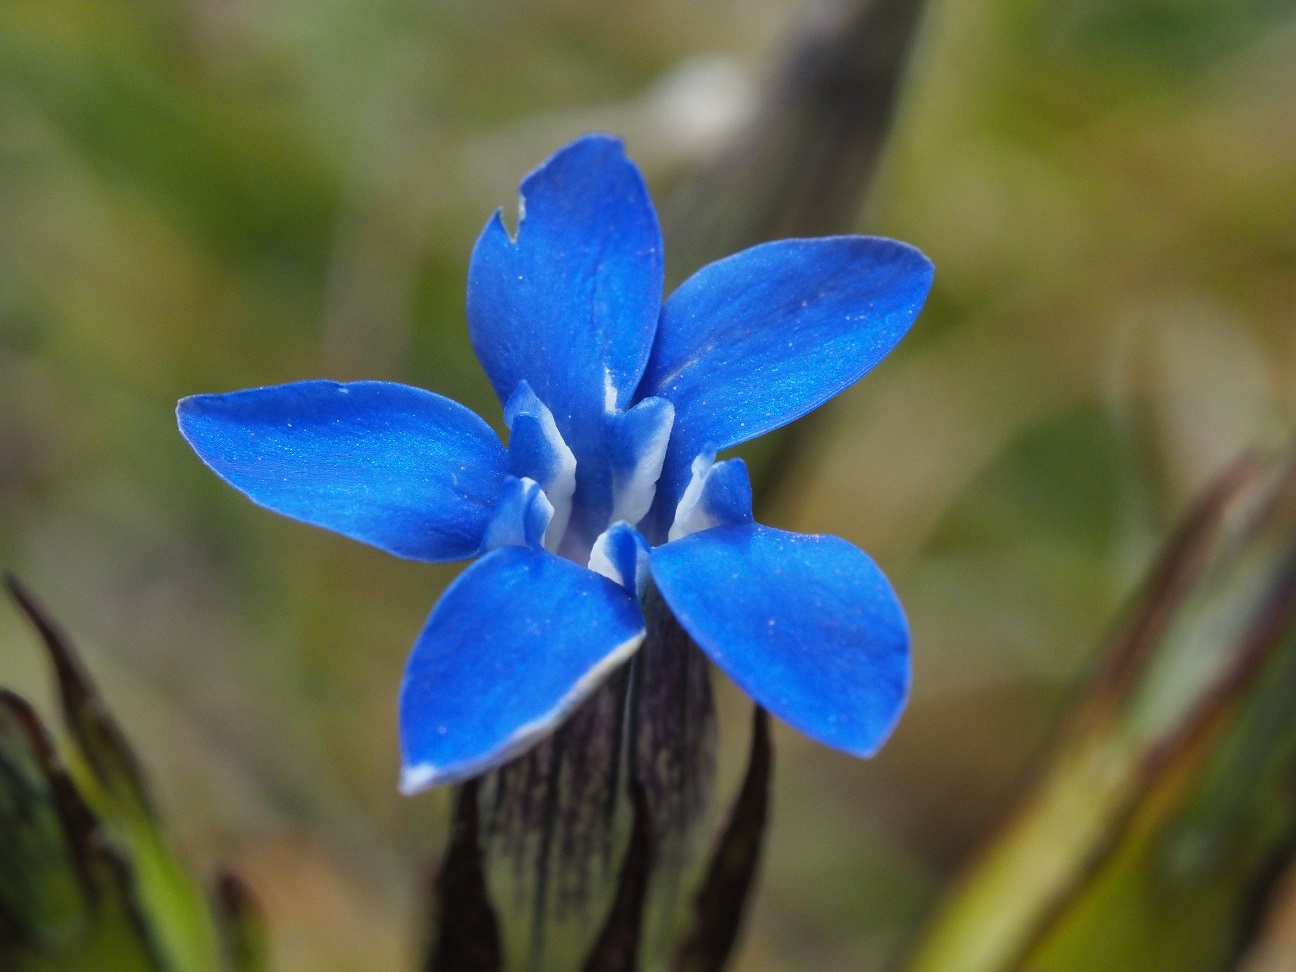 Arctisch Gentiaantje, een van de mooie IJslandse bloemen! (eigen foto)